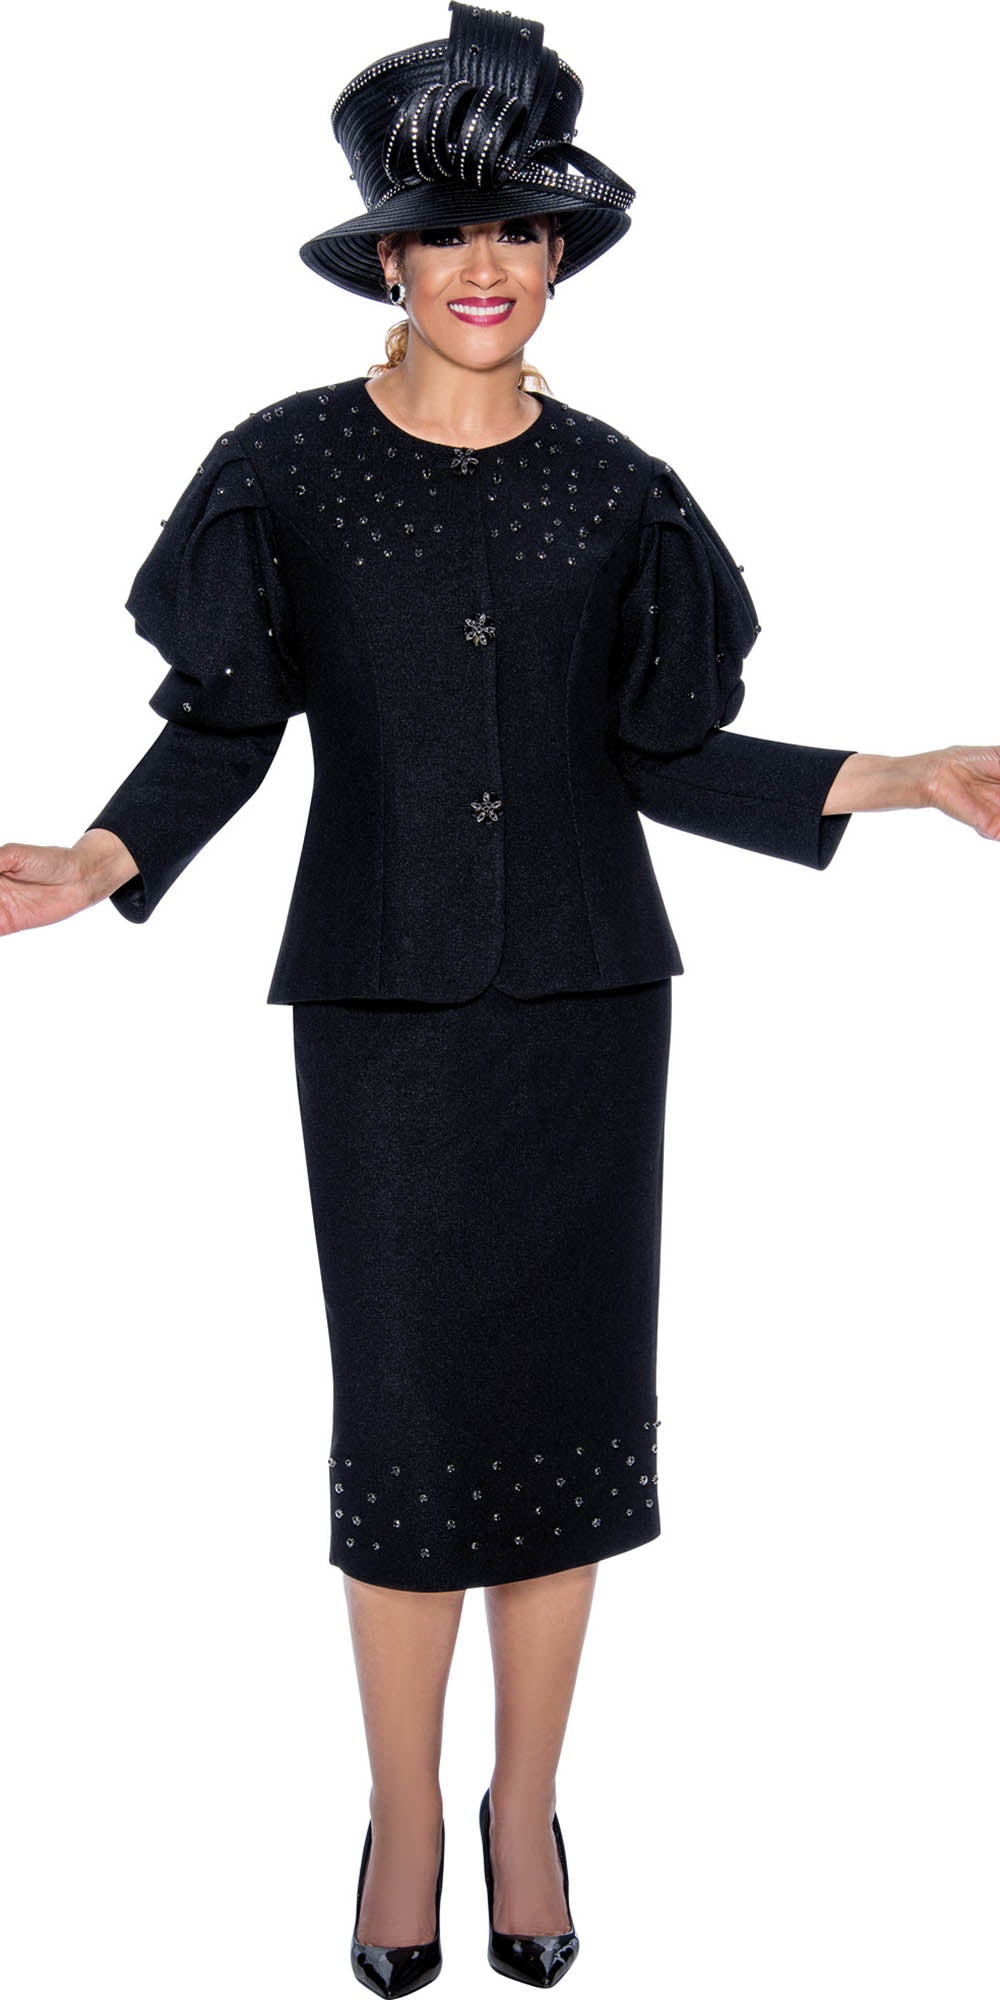 DCC - DCC4702 - Black - Embellished Knit 2PC Skirt Suit